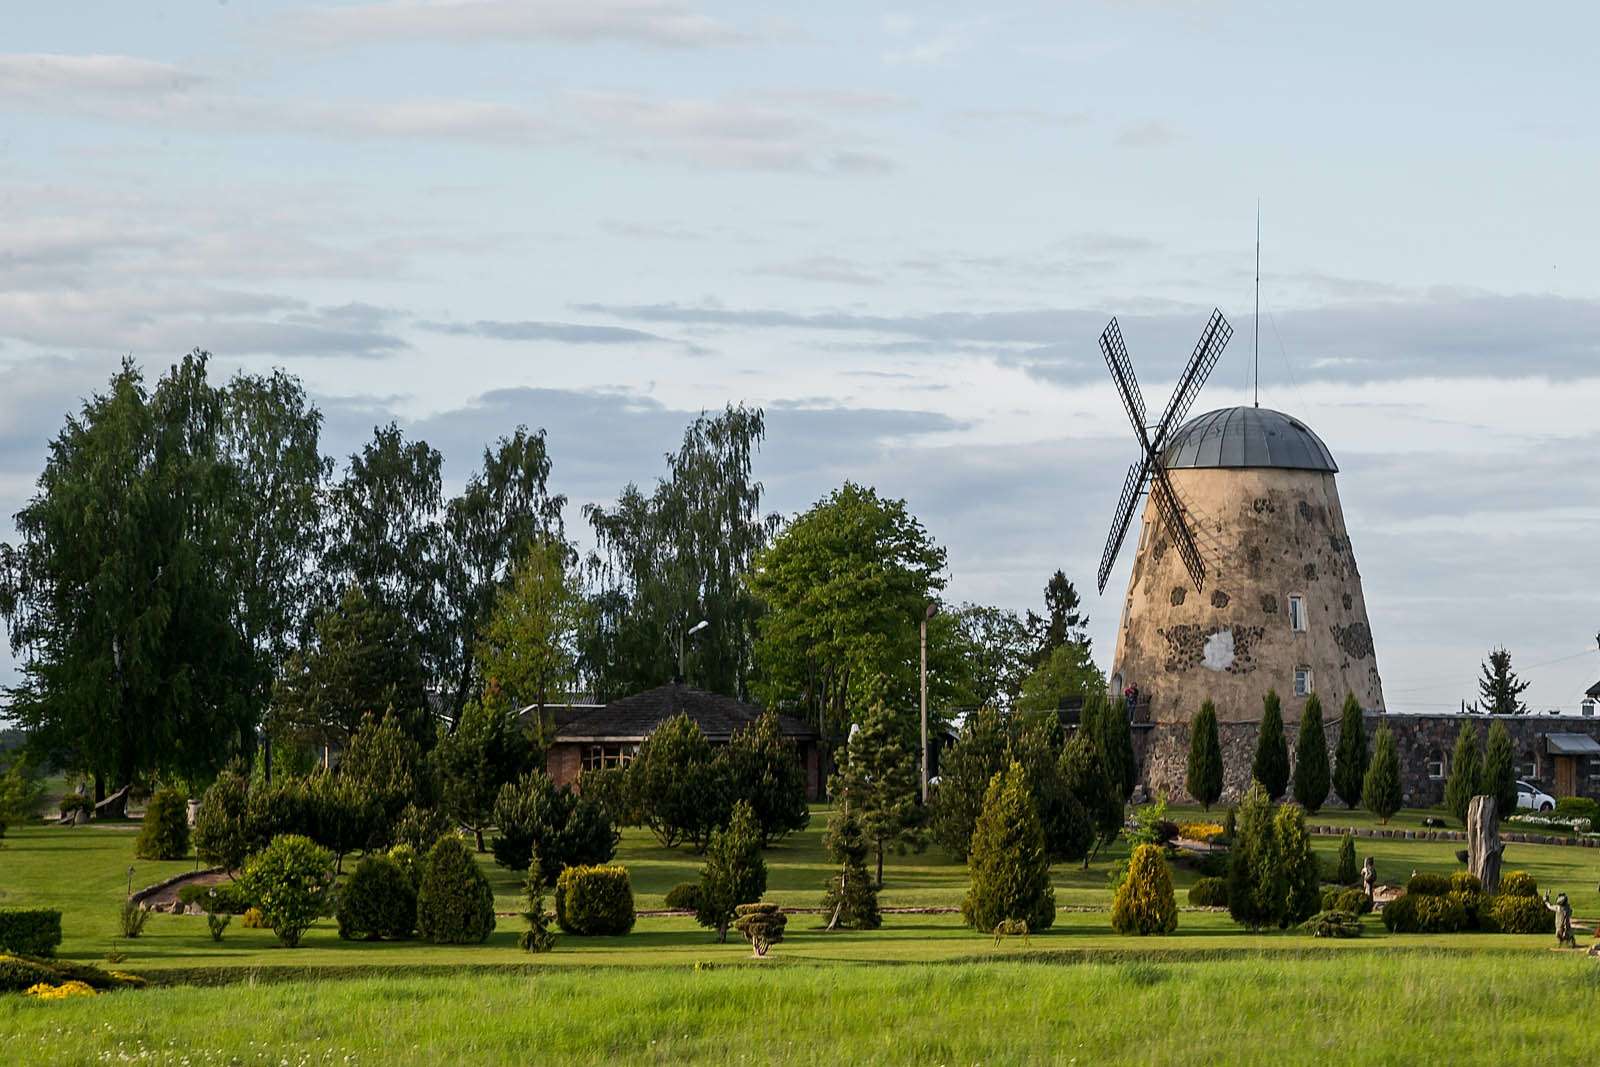 Одна из достопримечательностей города Обяляй в Рокишкском районе Паневежского уезда Литвы